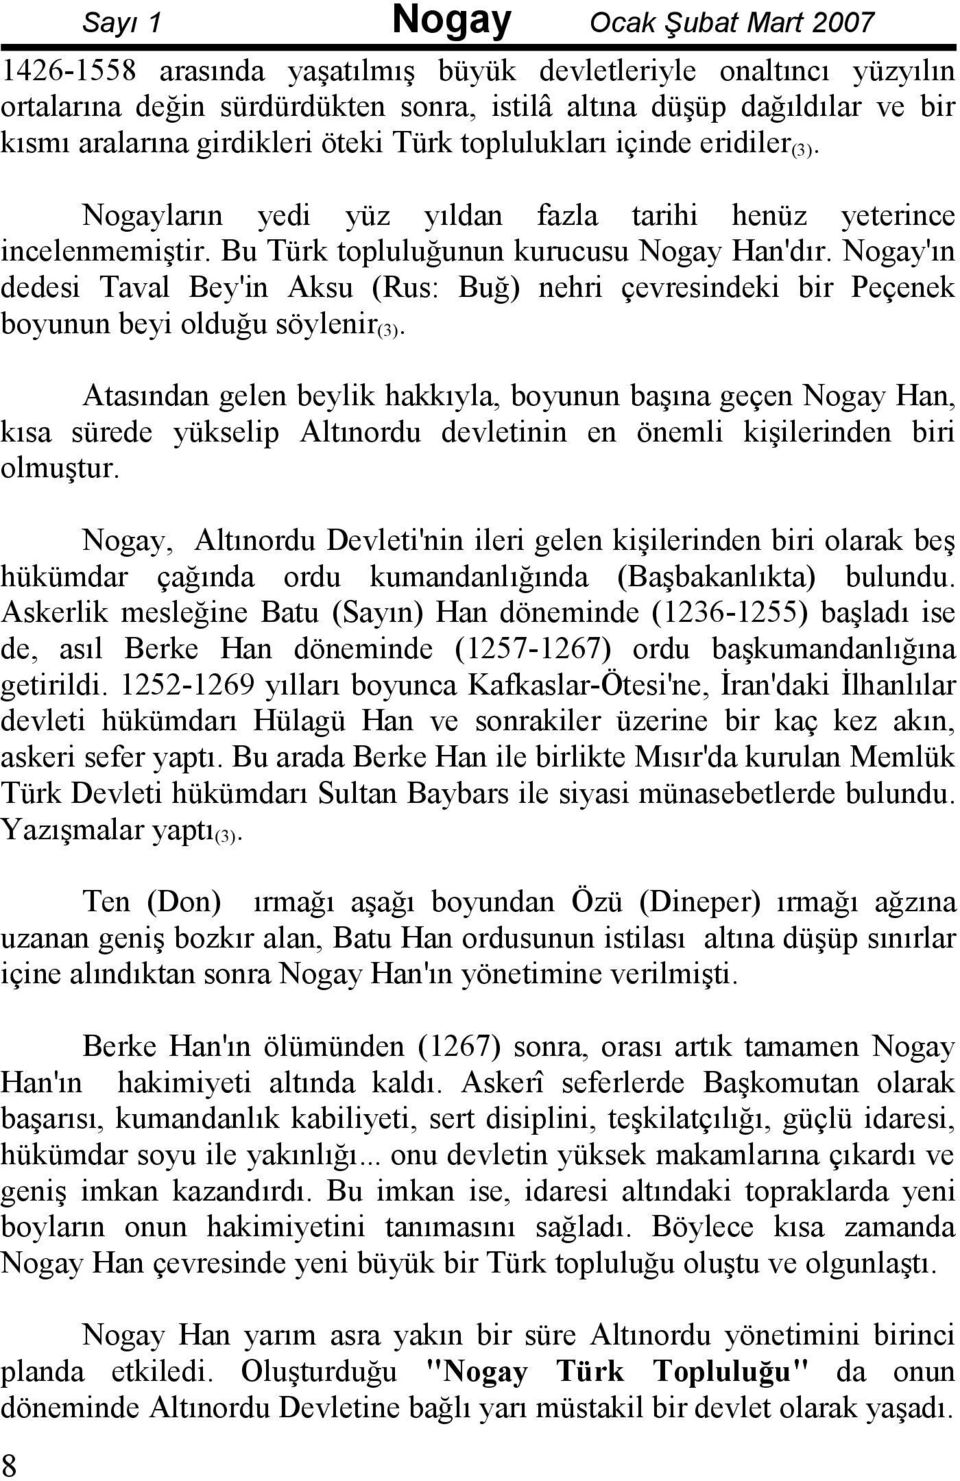 Nogay'ın dedesi Taval Bey'in Aksu (Rus: Buğ) nehri çevresindeki bir Peçenek boyunun beyi olduğu söylenir (3).